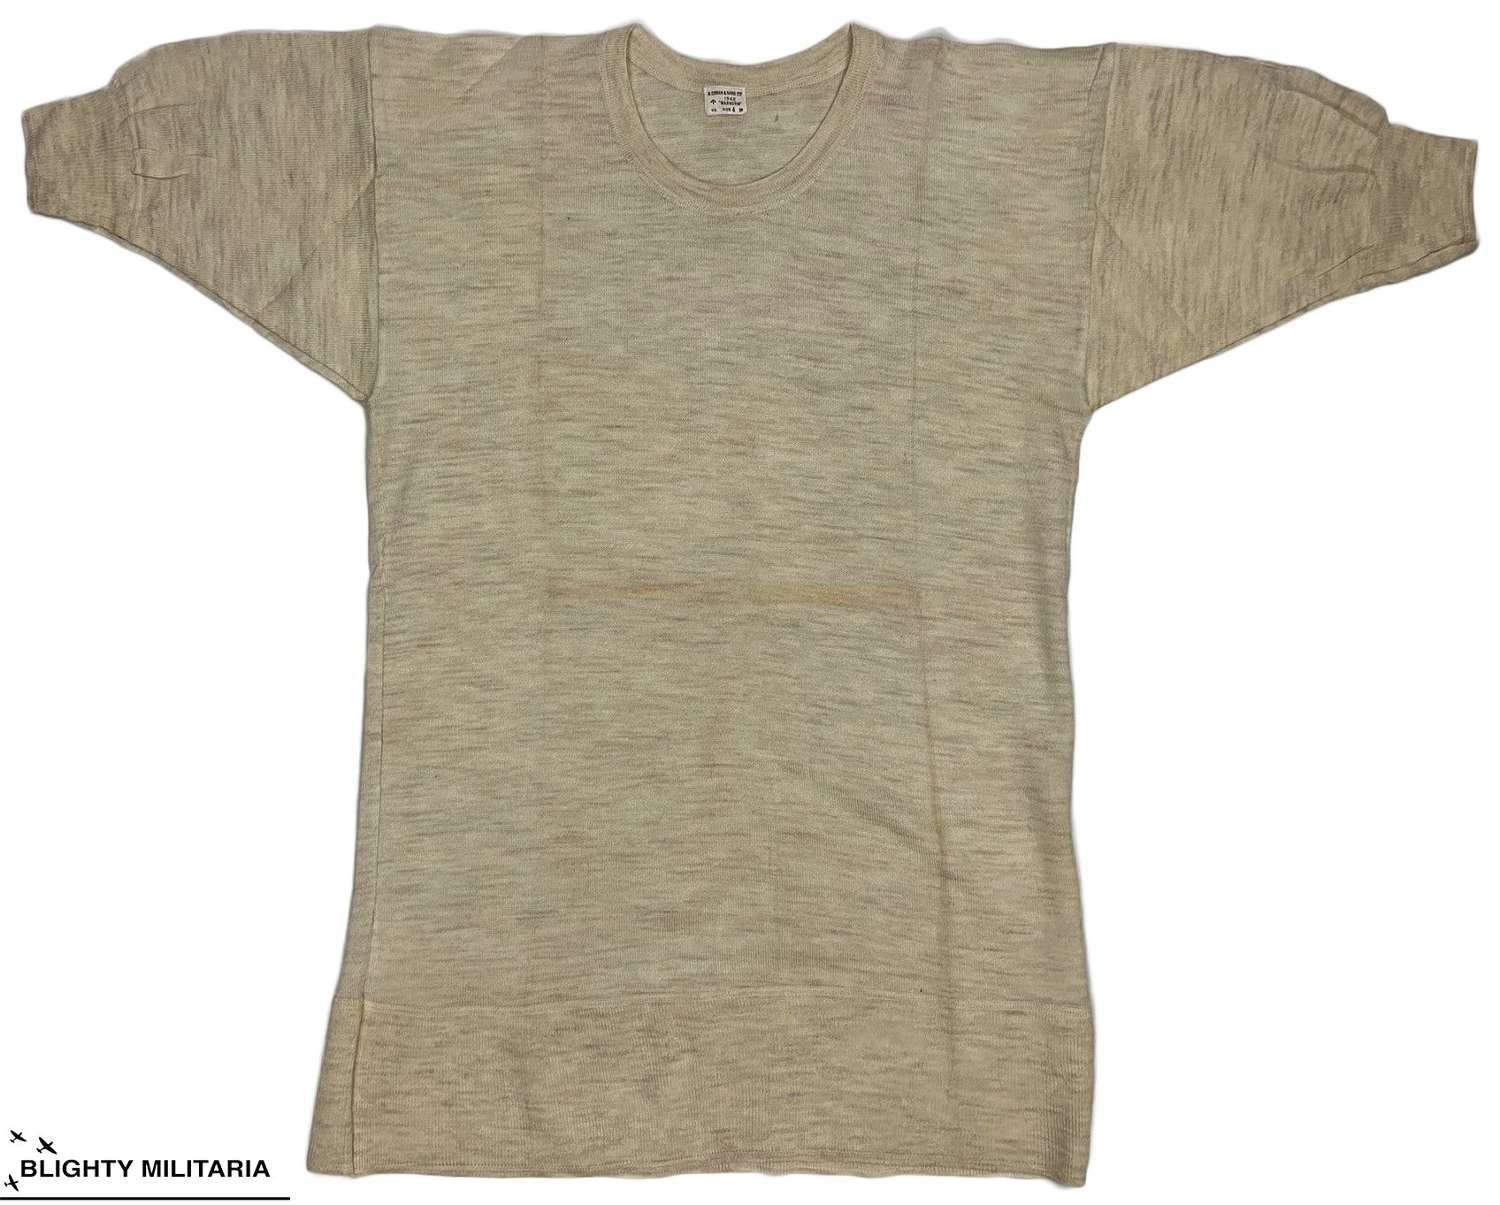 Original 1942 Dated British Woollen Undershirt - Size 4